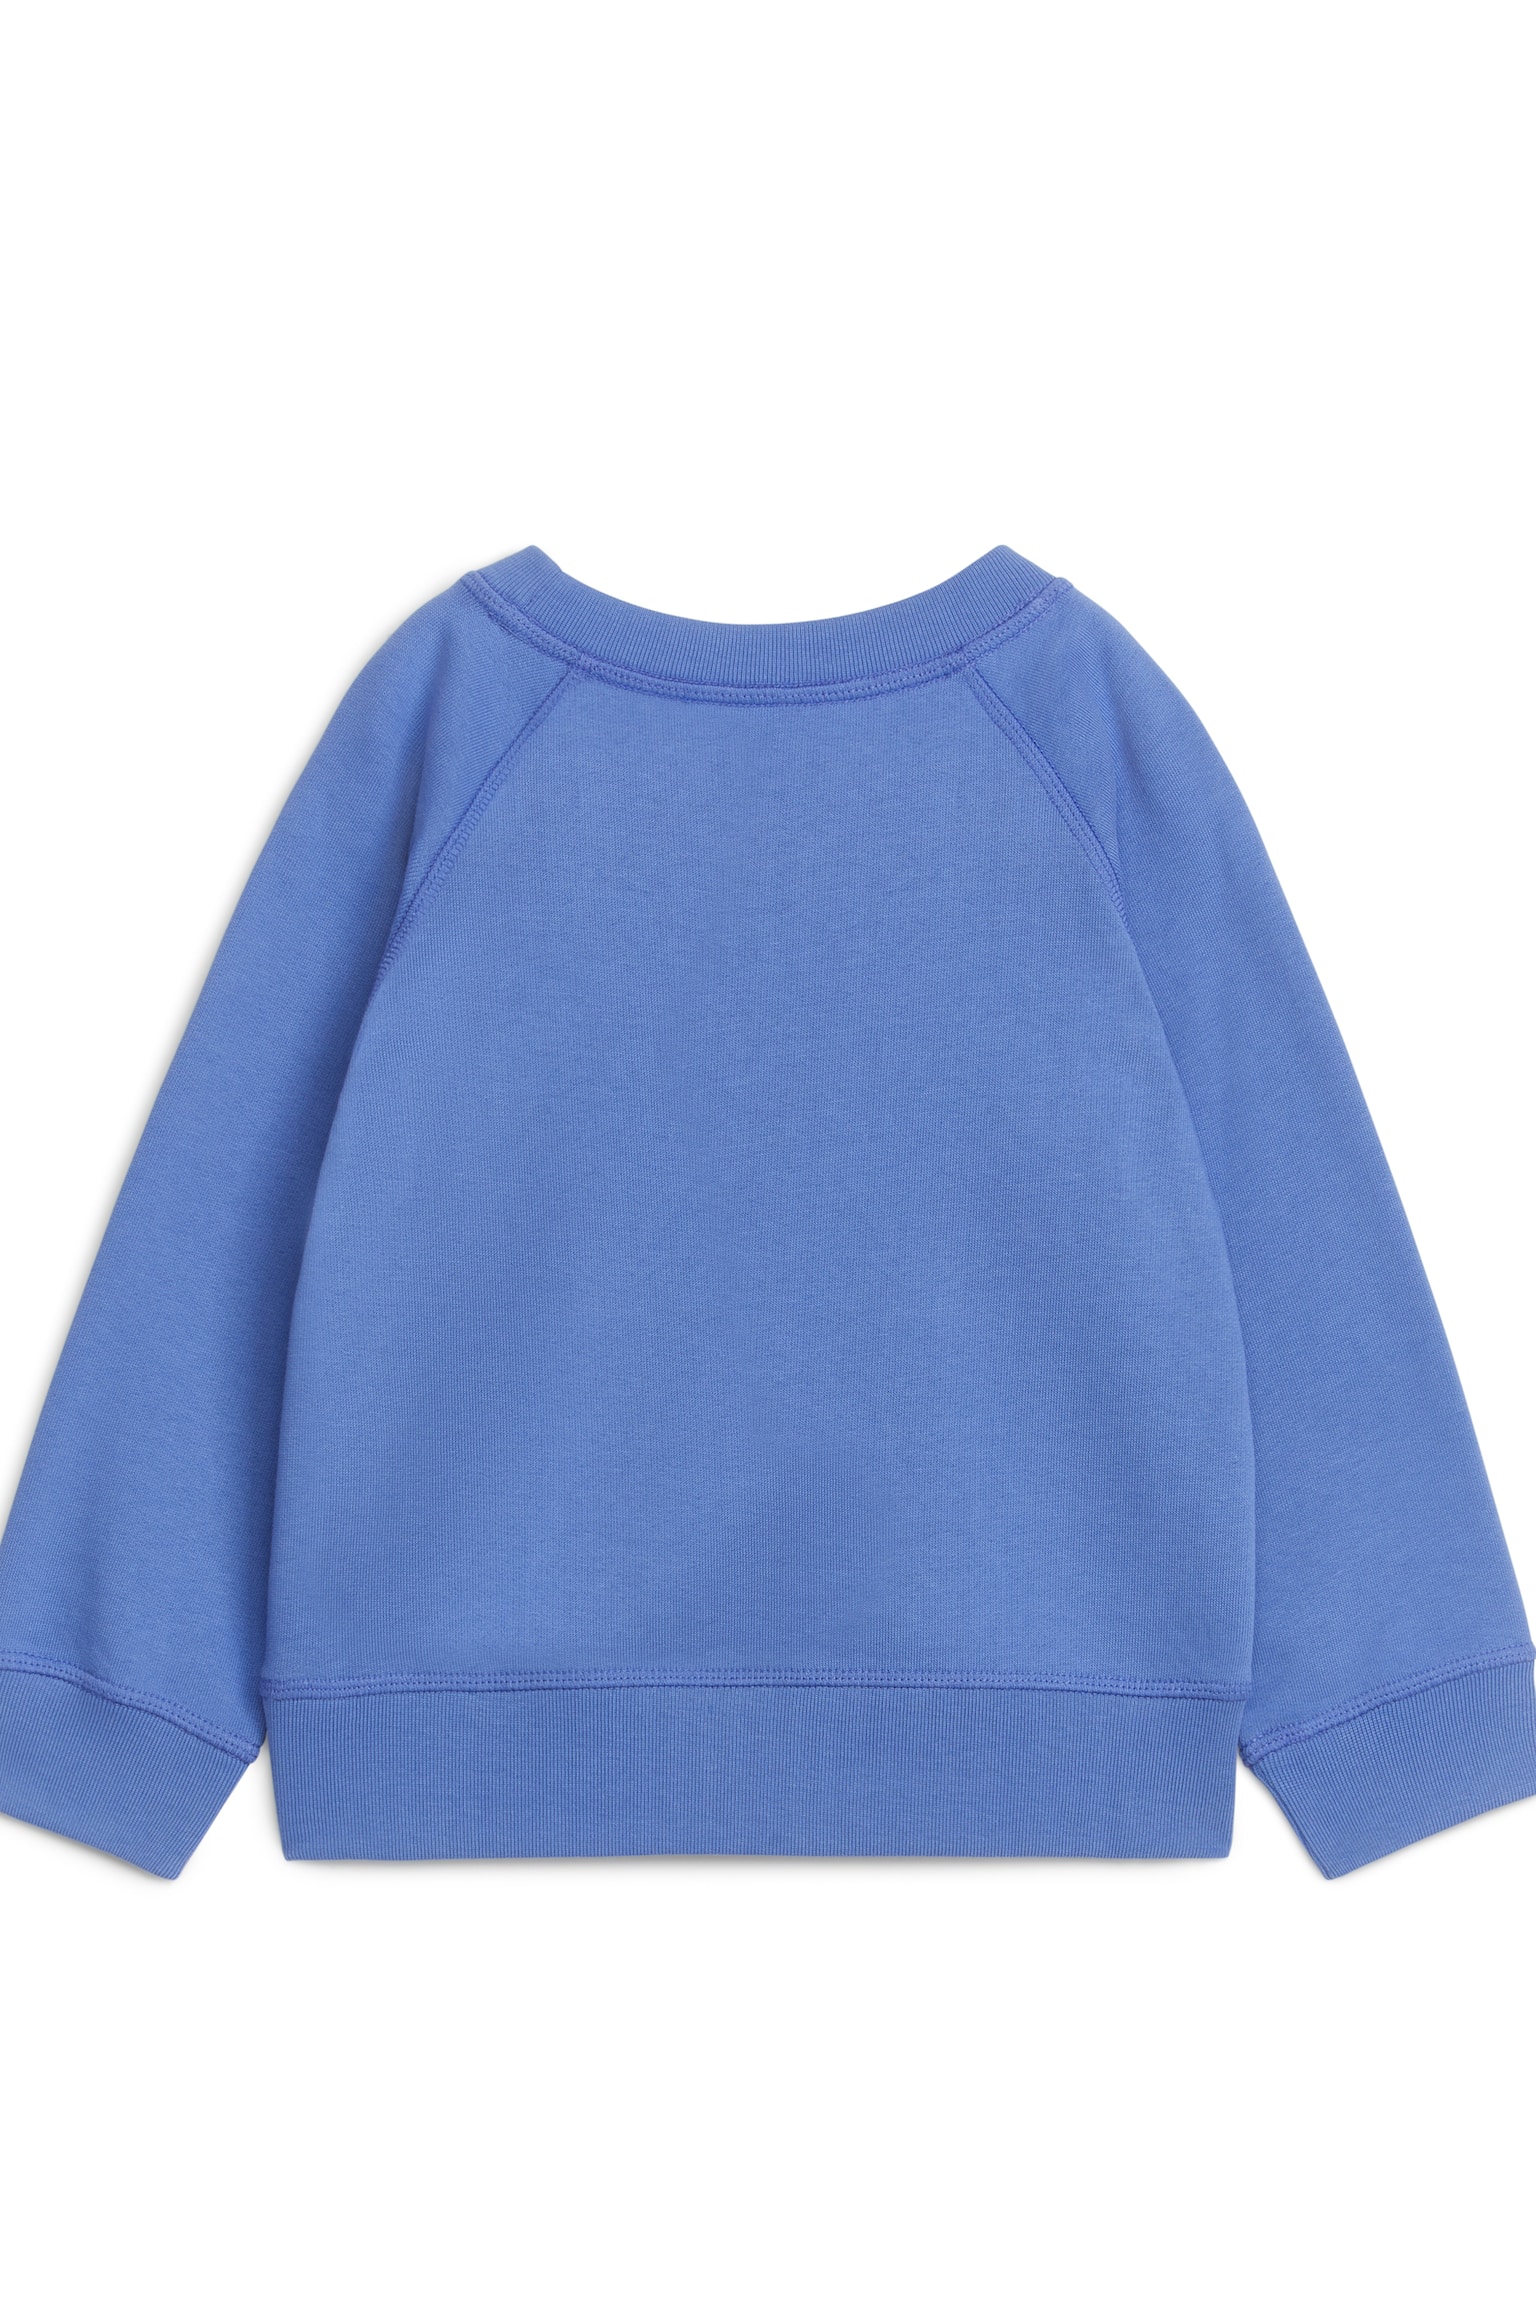 Sweatshirt aus Baumwolle - Blau/Taubenblau/Pfirsich/Rosa/Beige/Graumeliert/Dunkelblau/Orange/Blau/Grün - 3